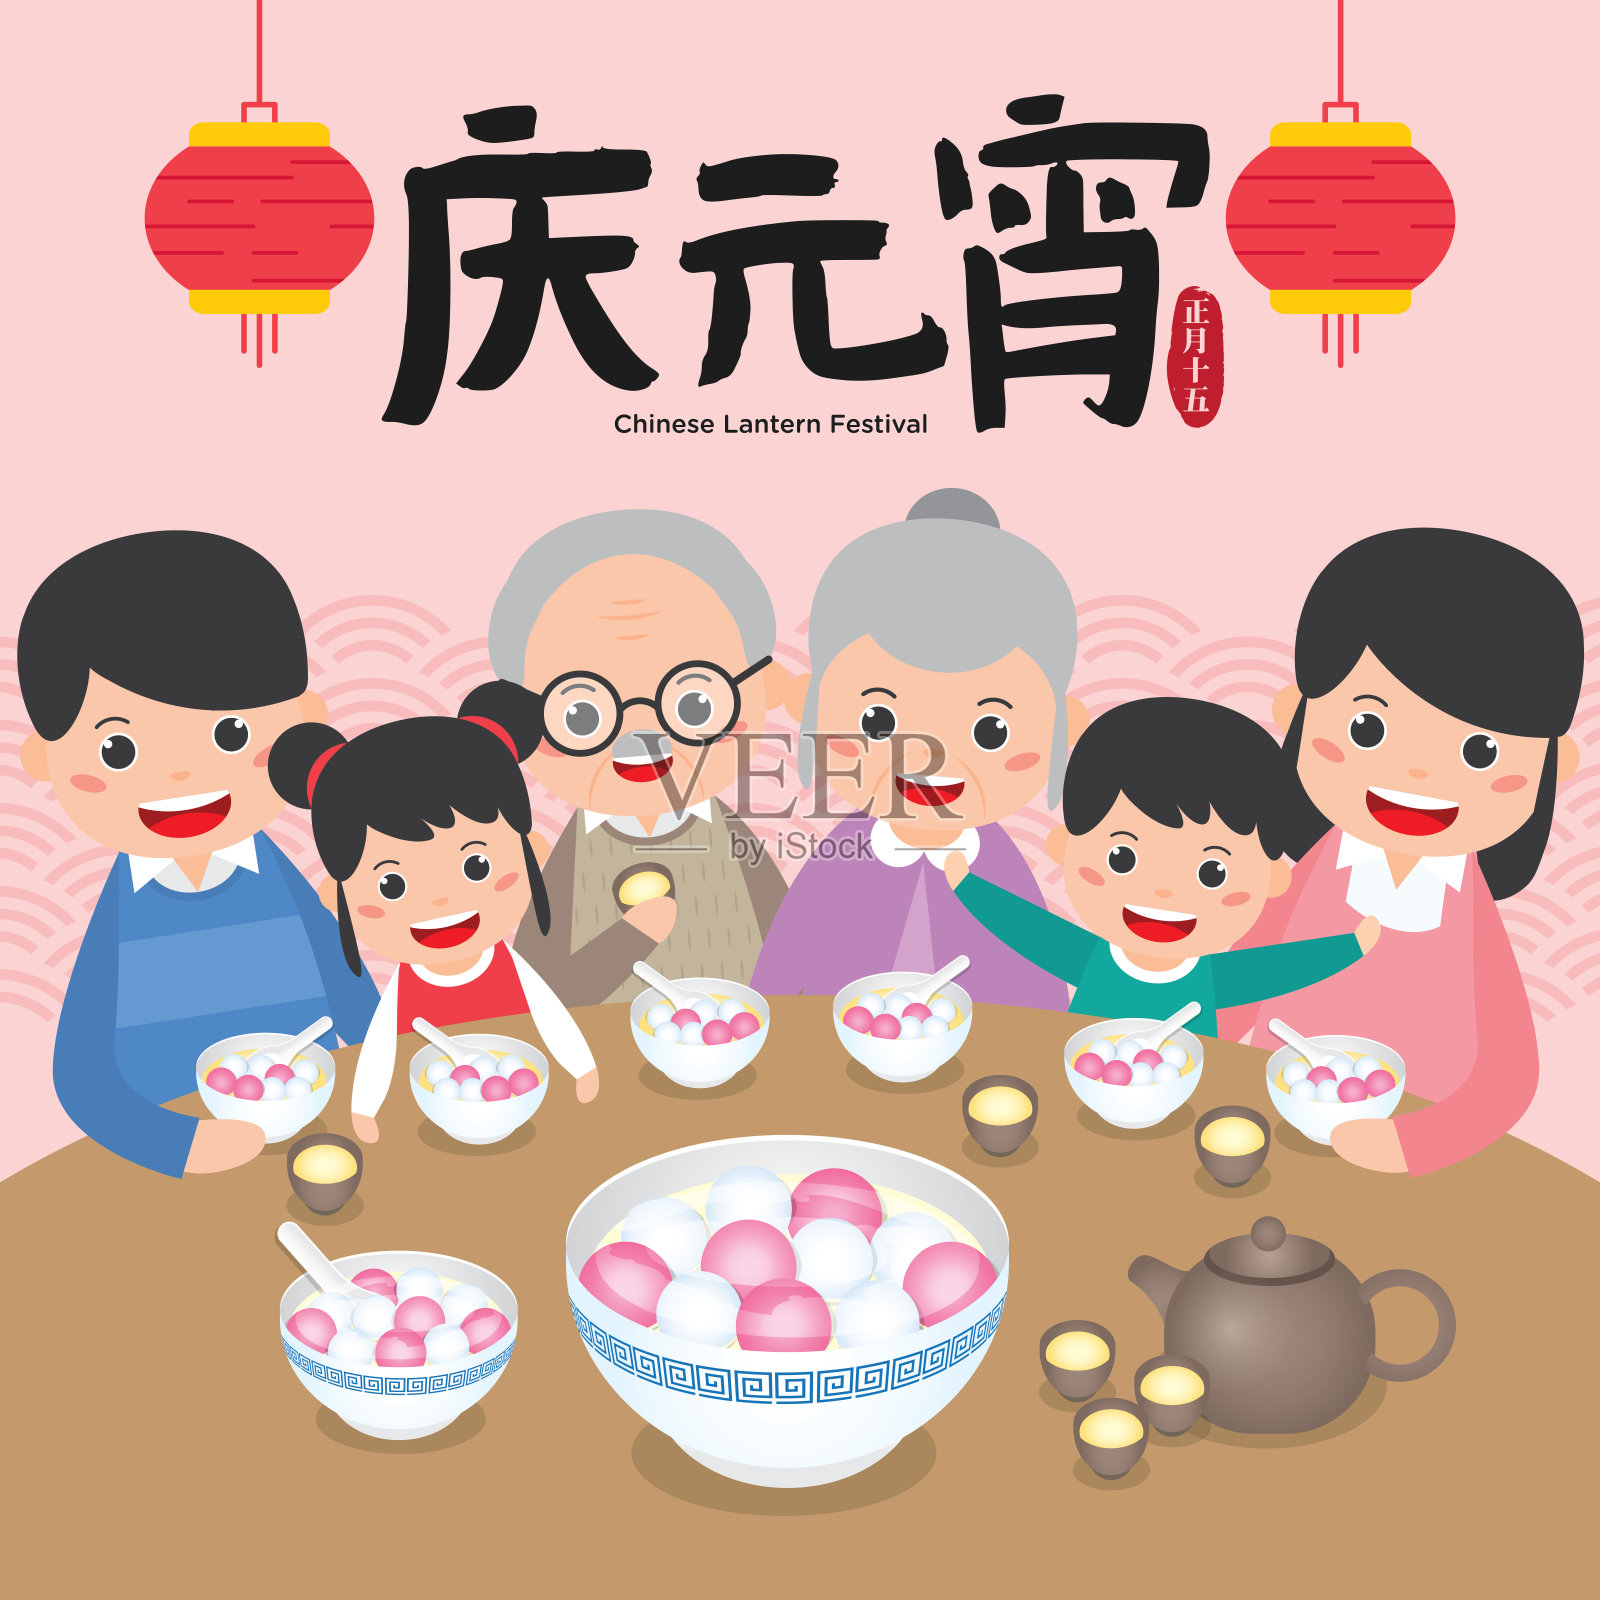 中国元宵节、元宵节、中国传统节日矢量插画。阖家欢乐享汤圆。(翻译:中国元宵节)设计模板素材